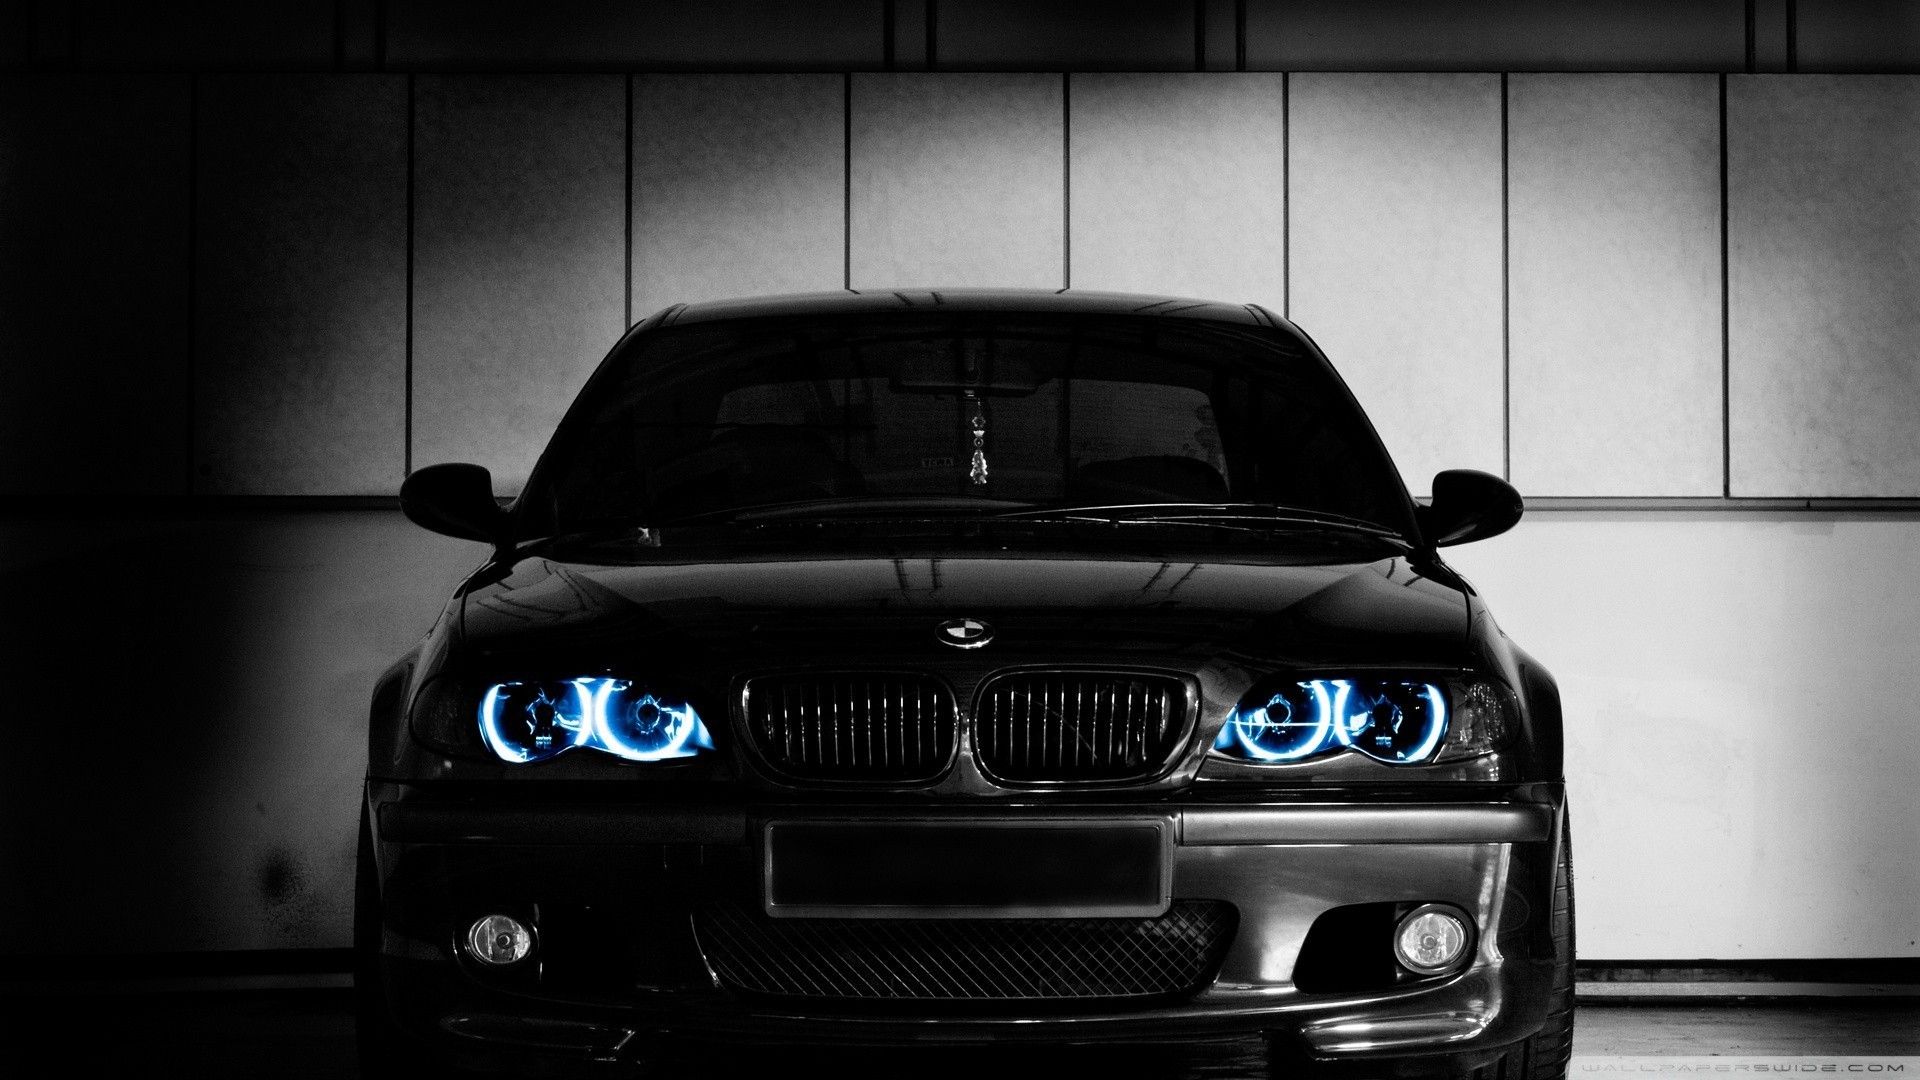 A black bmw car with blue headlights - BMW